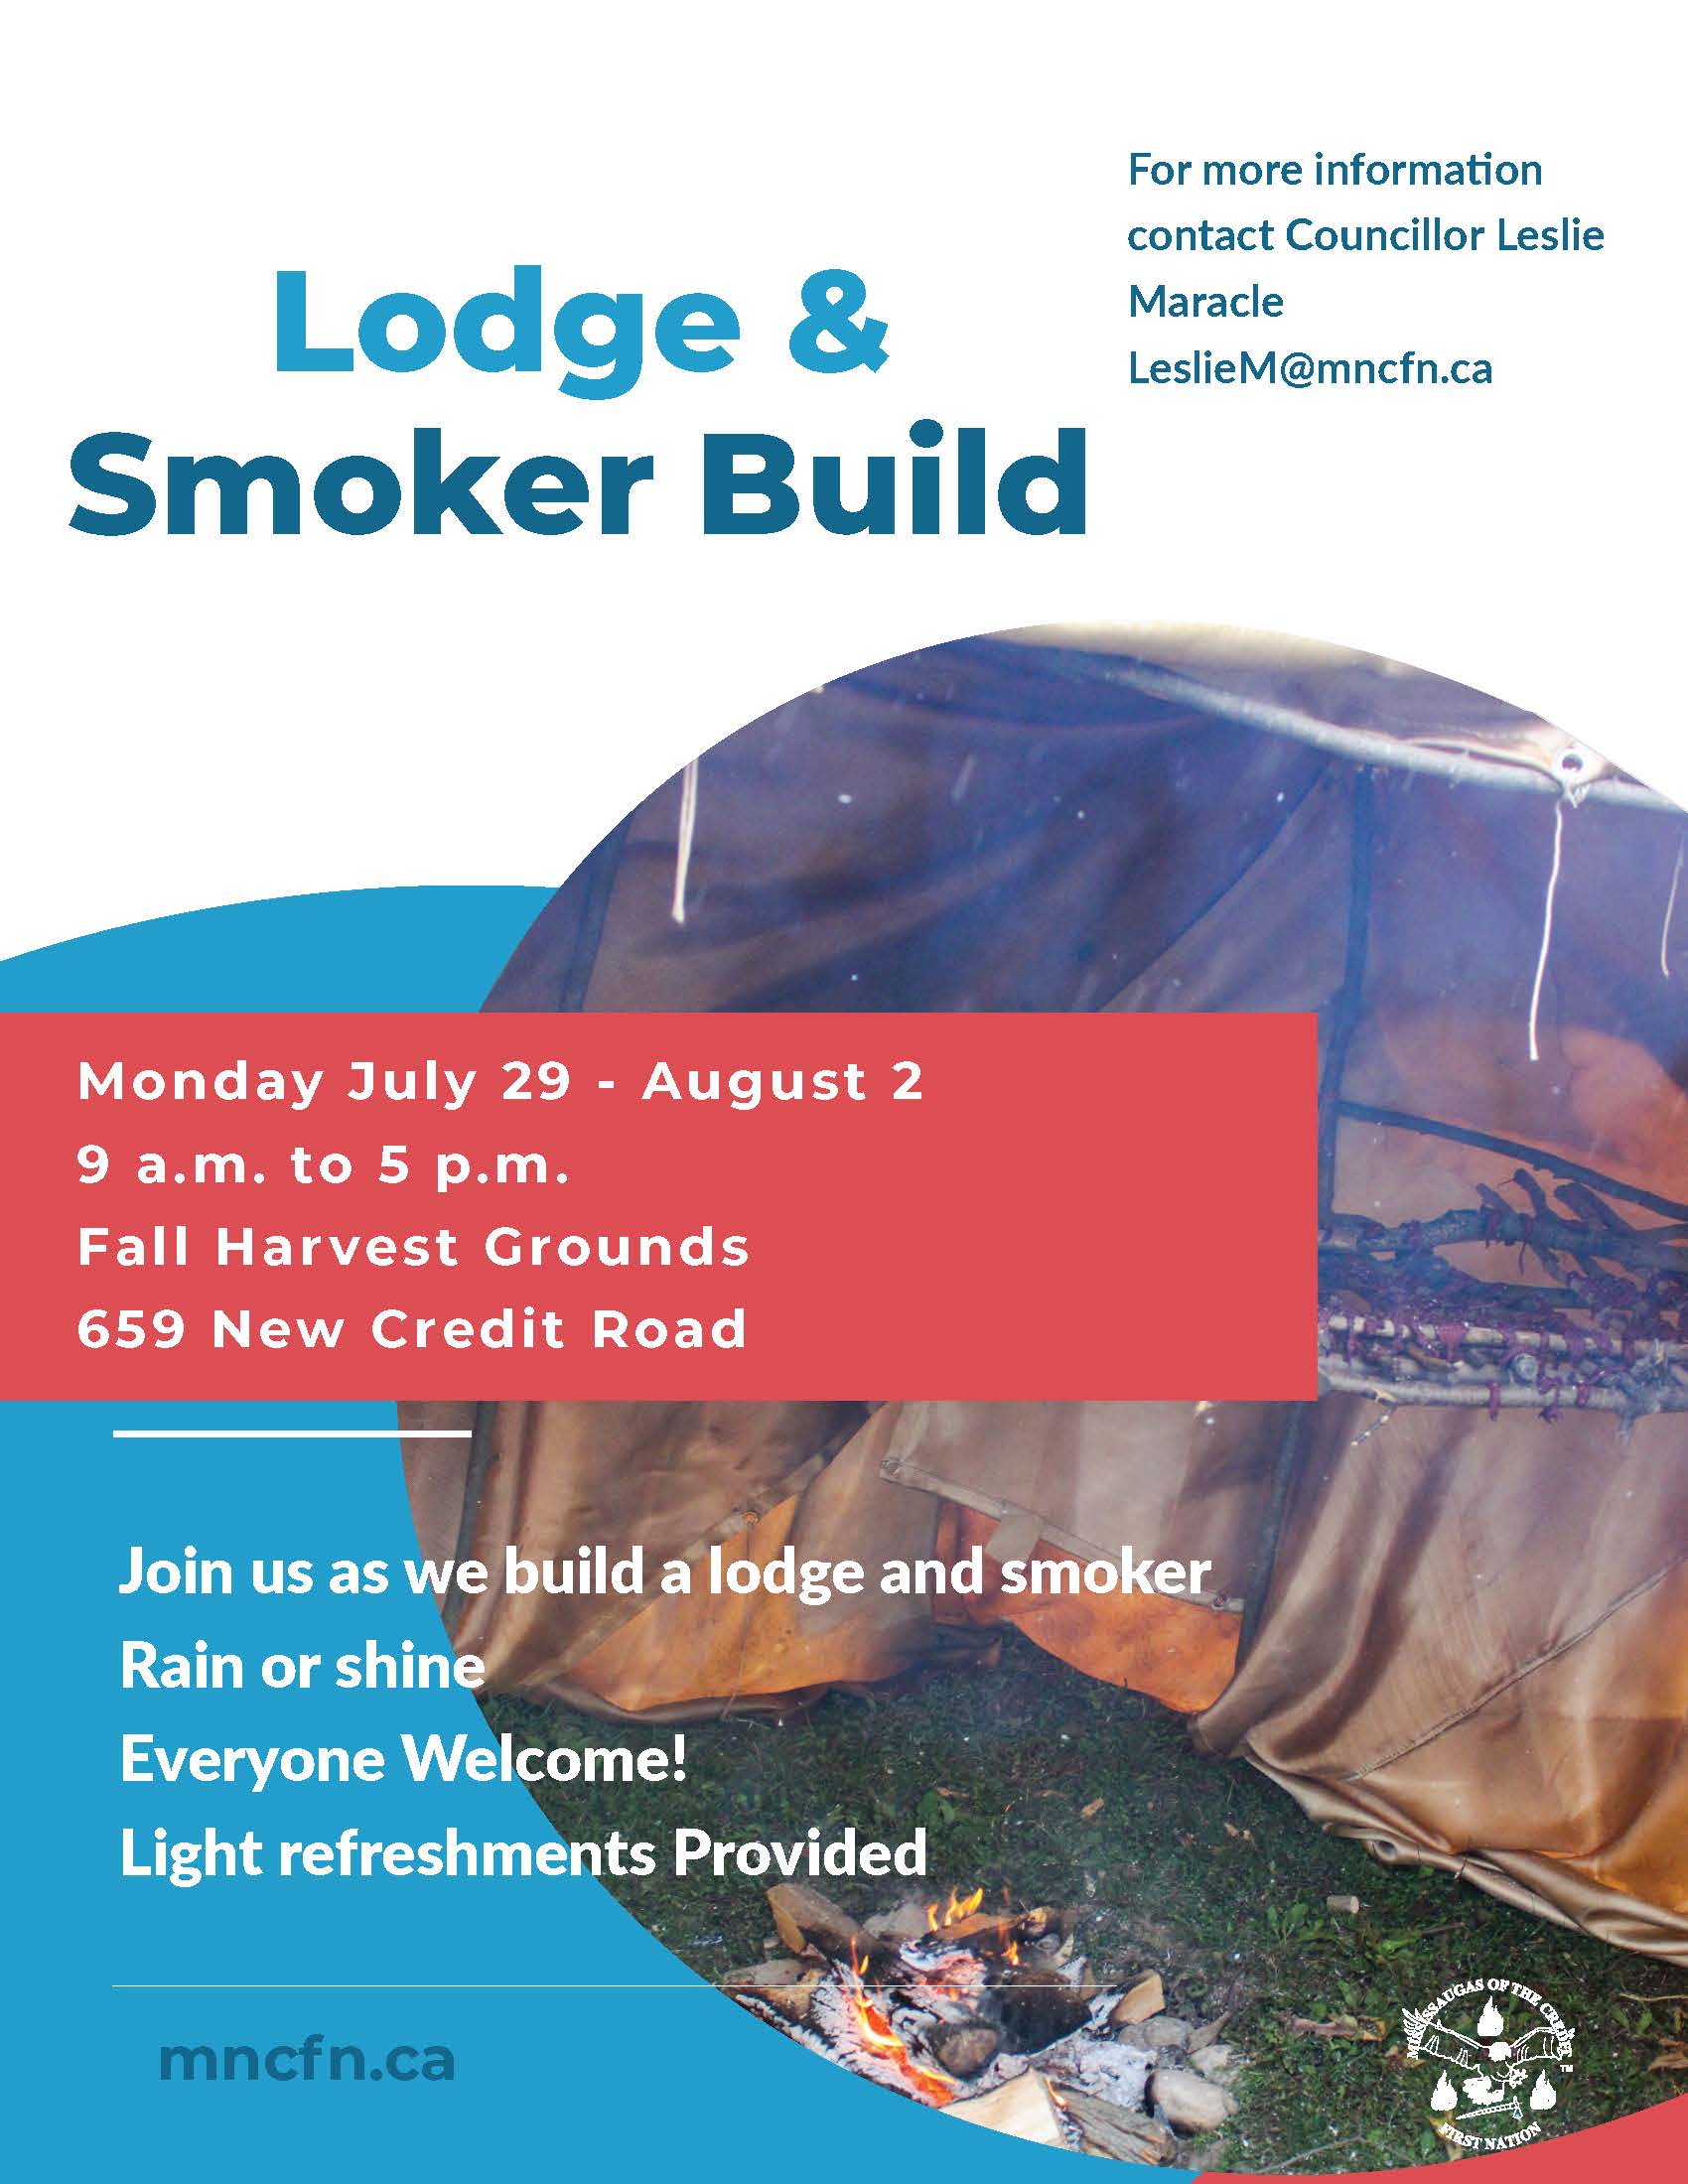 Lodge and smoker build